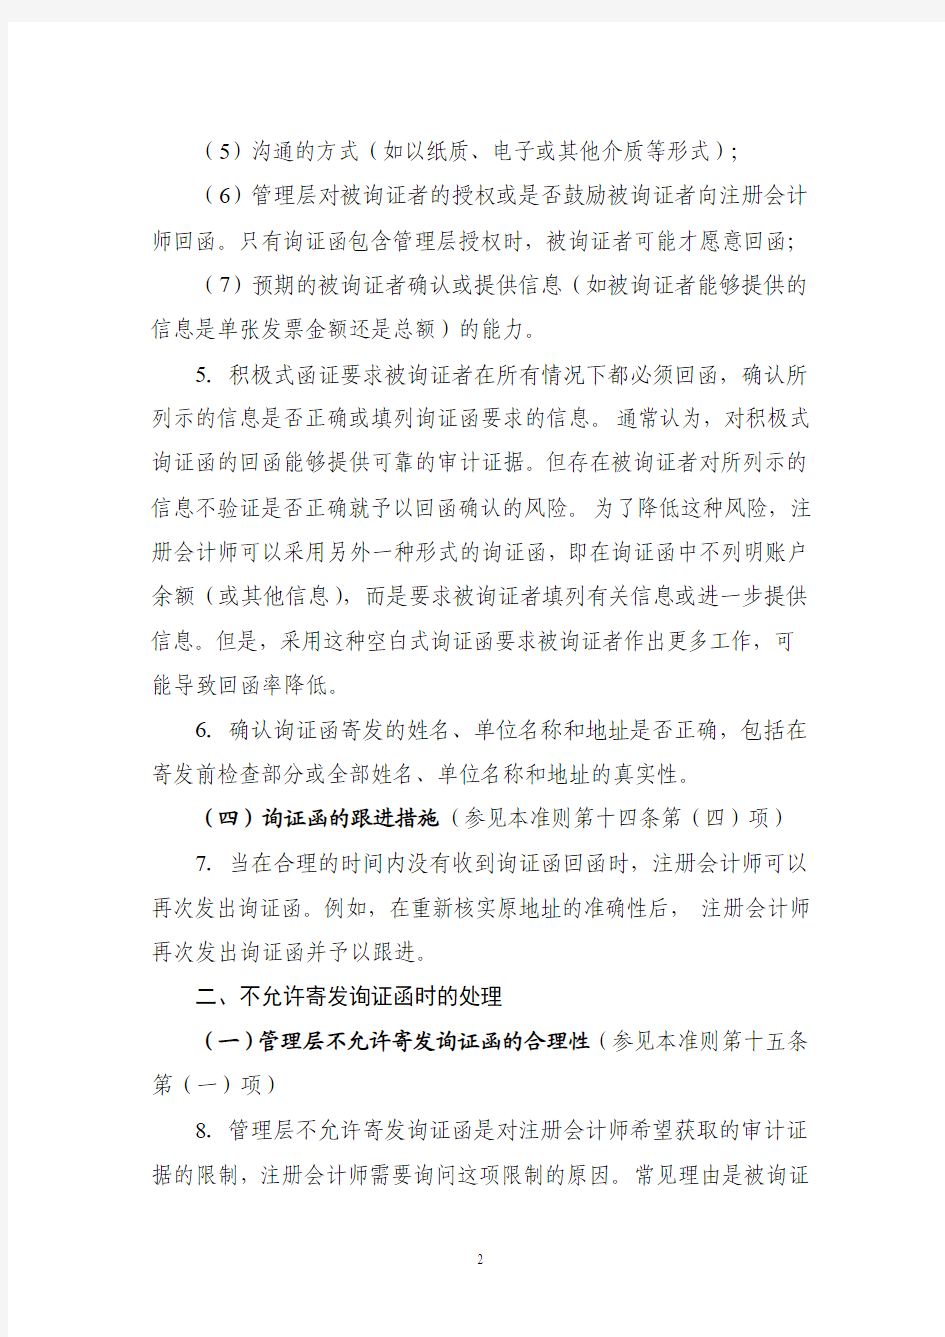 《中国注册会计师审计准则第1312号——函证》应用指南2010